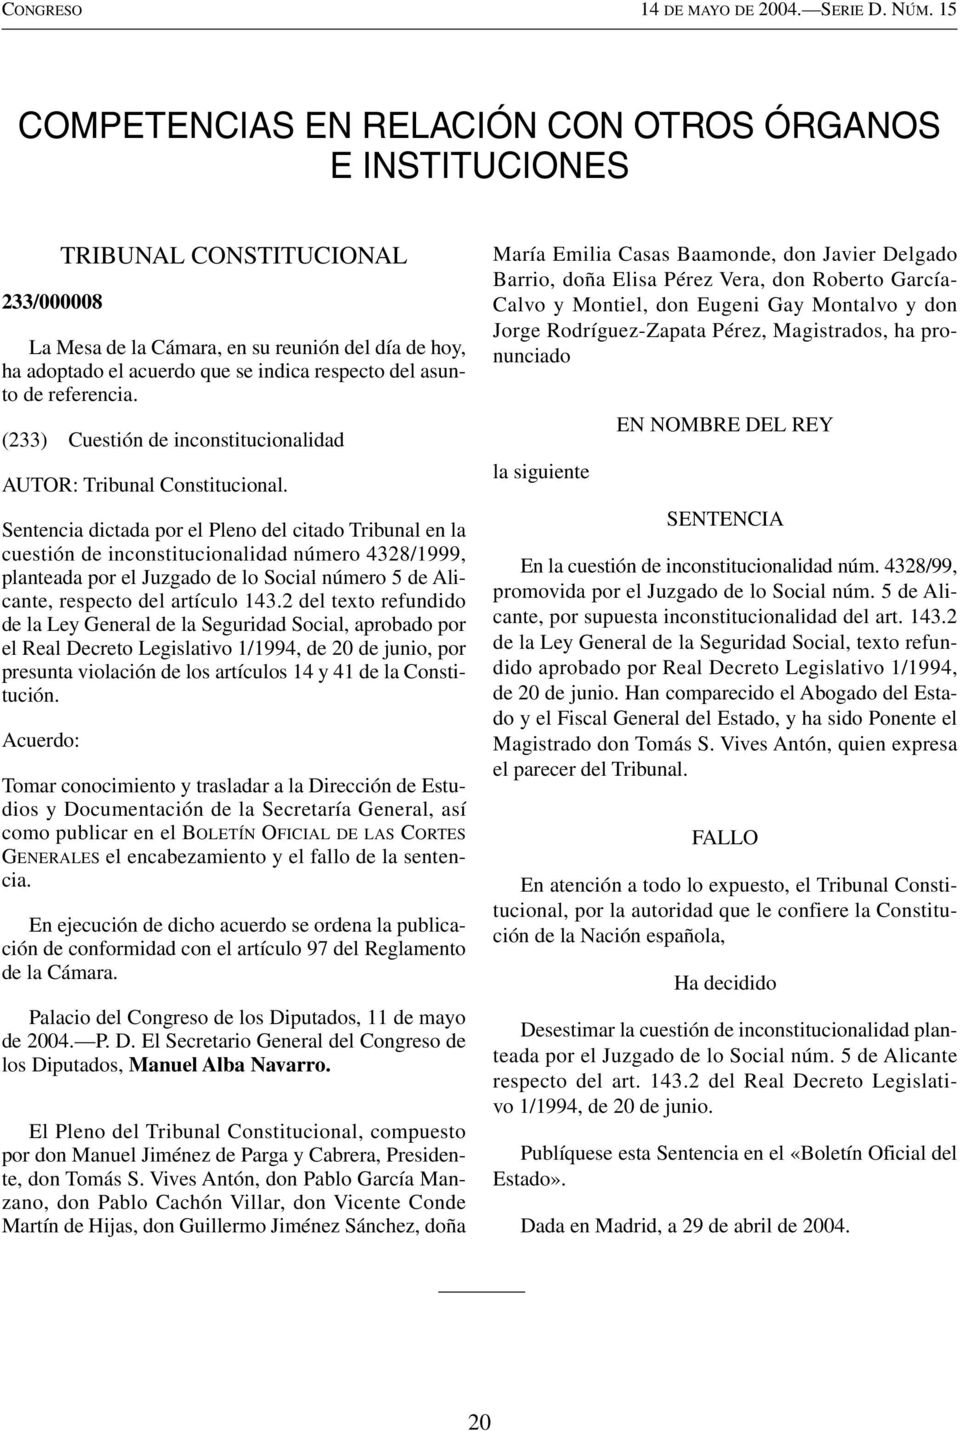 2 del texto refundido de la Ley General de la Seguridad Social, aprobado por el Real Decreto Legislativo 1/1994, de 20 de junio, por presunta violación de los artículos 14 y 41 de la Constitución.